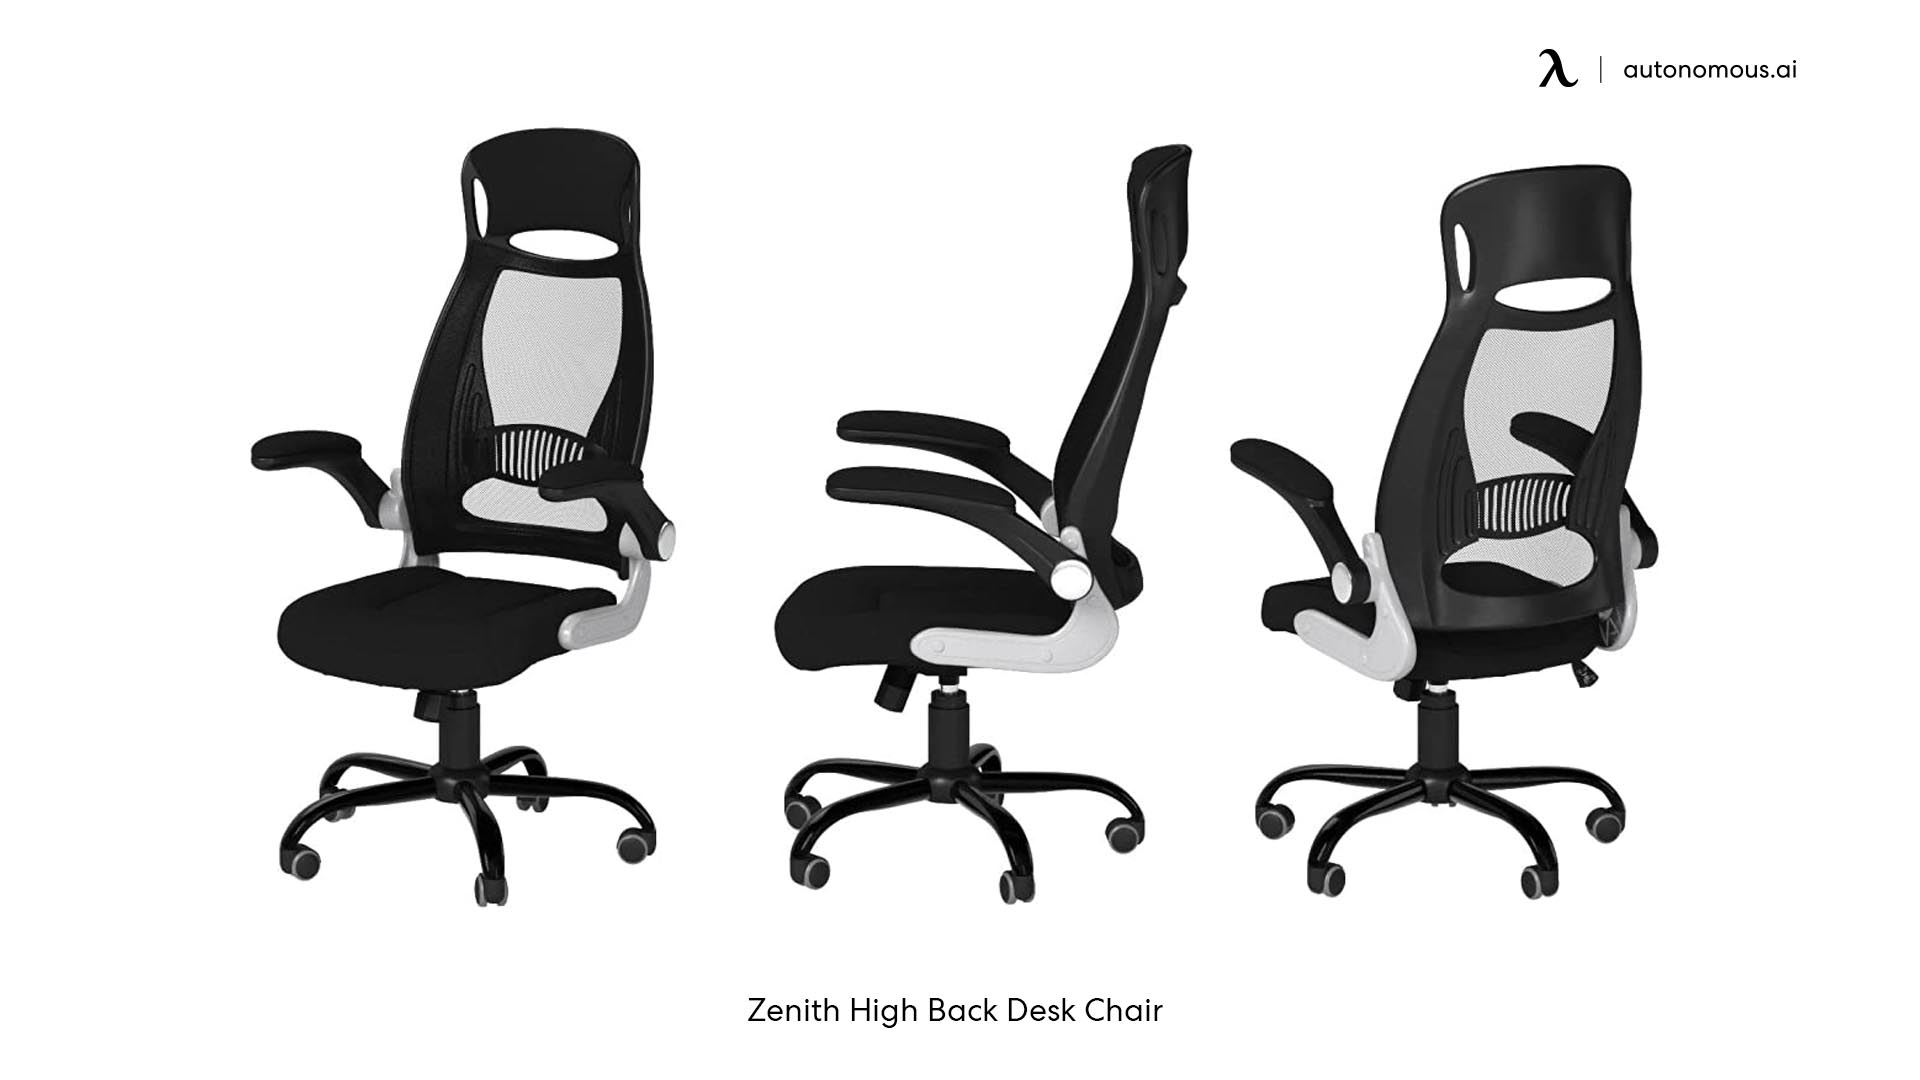 Zenith High Back Desk Chair